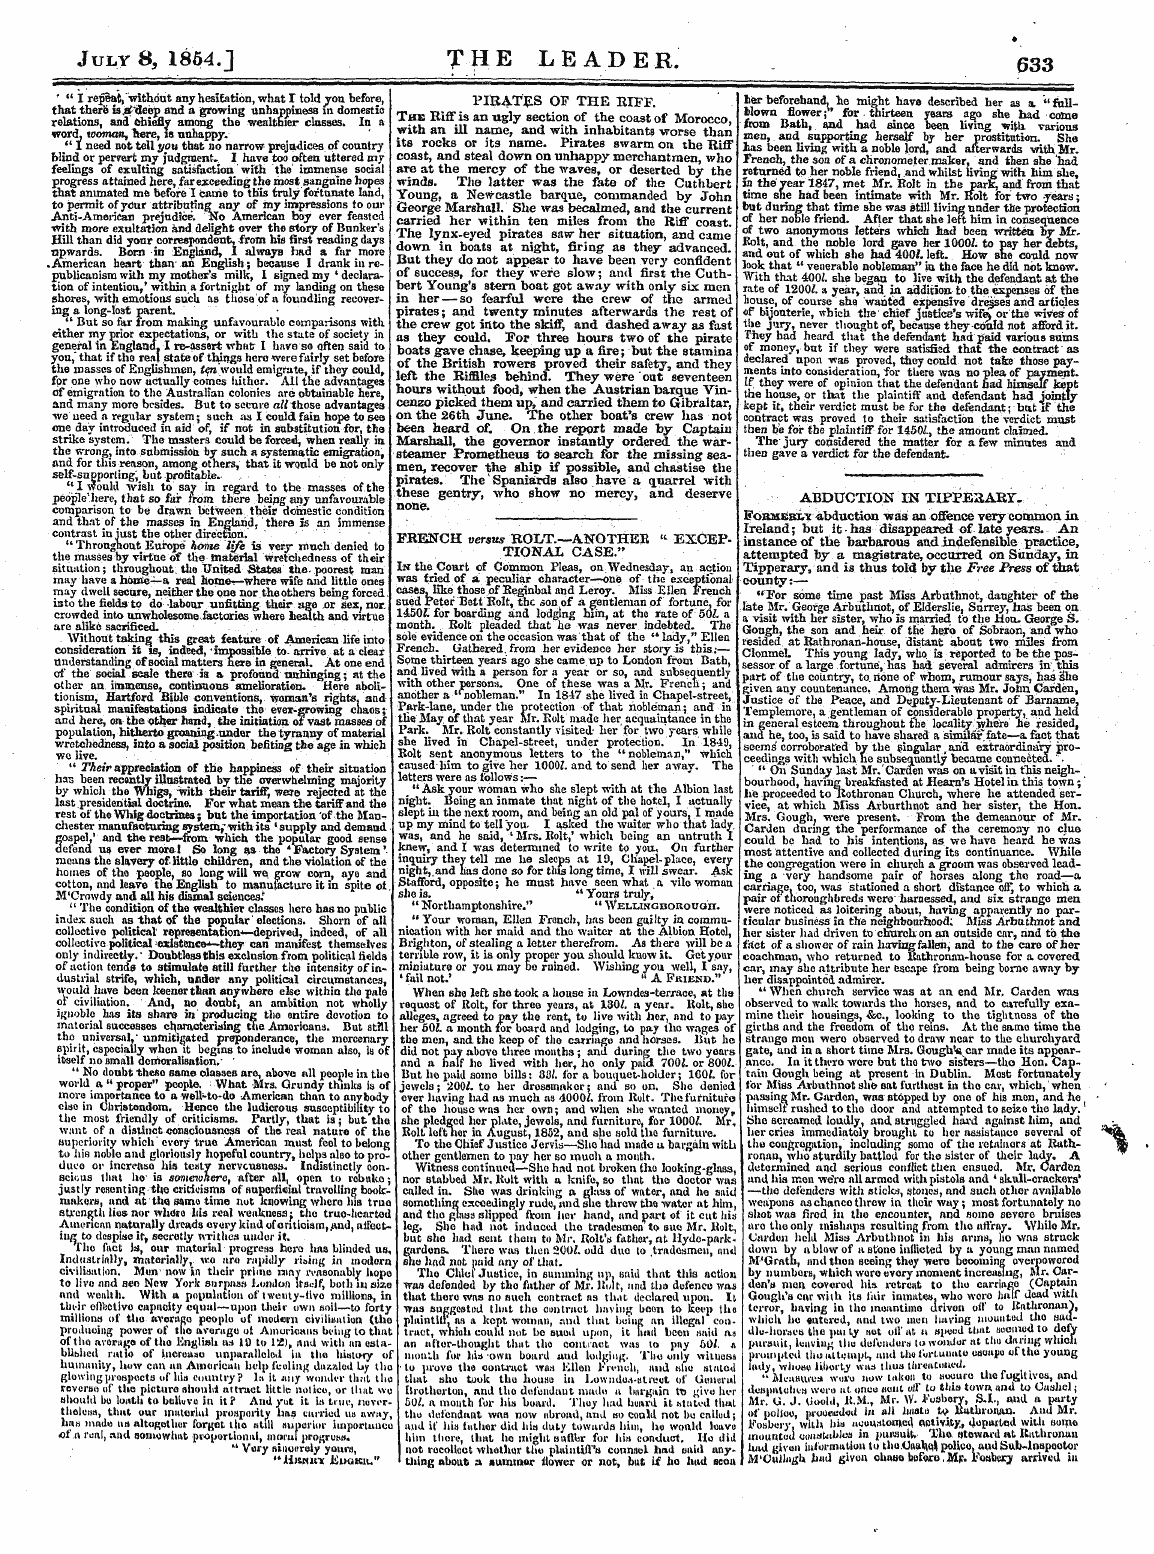 Leader (1850-1860): jS F Y, 2nd edition - July 8, 1854. J T H E L E Ad E R. . 633